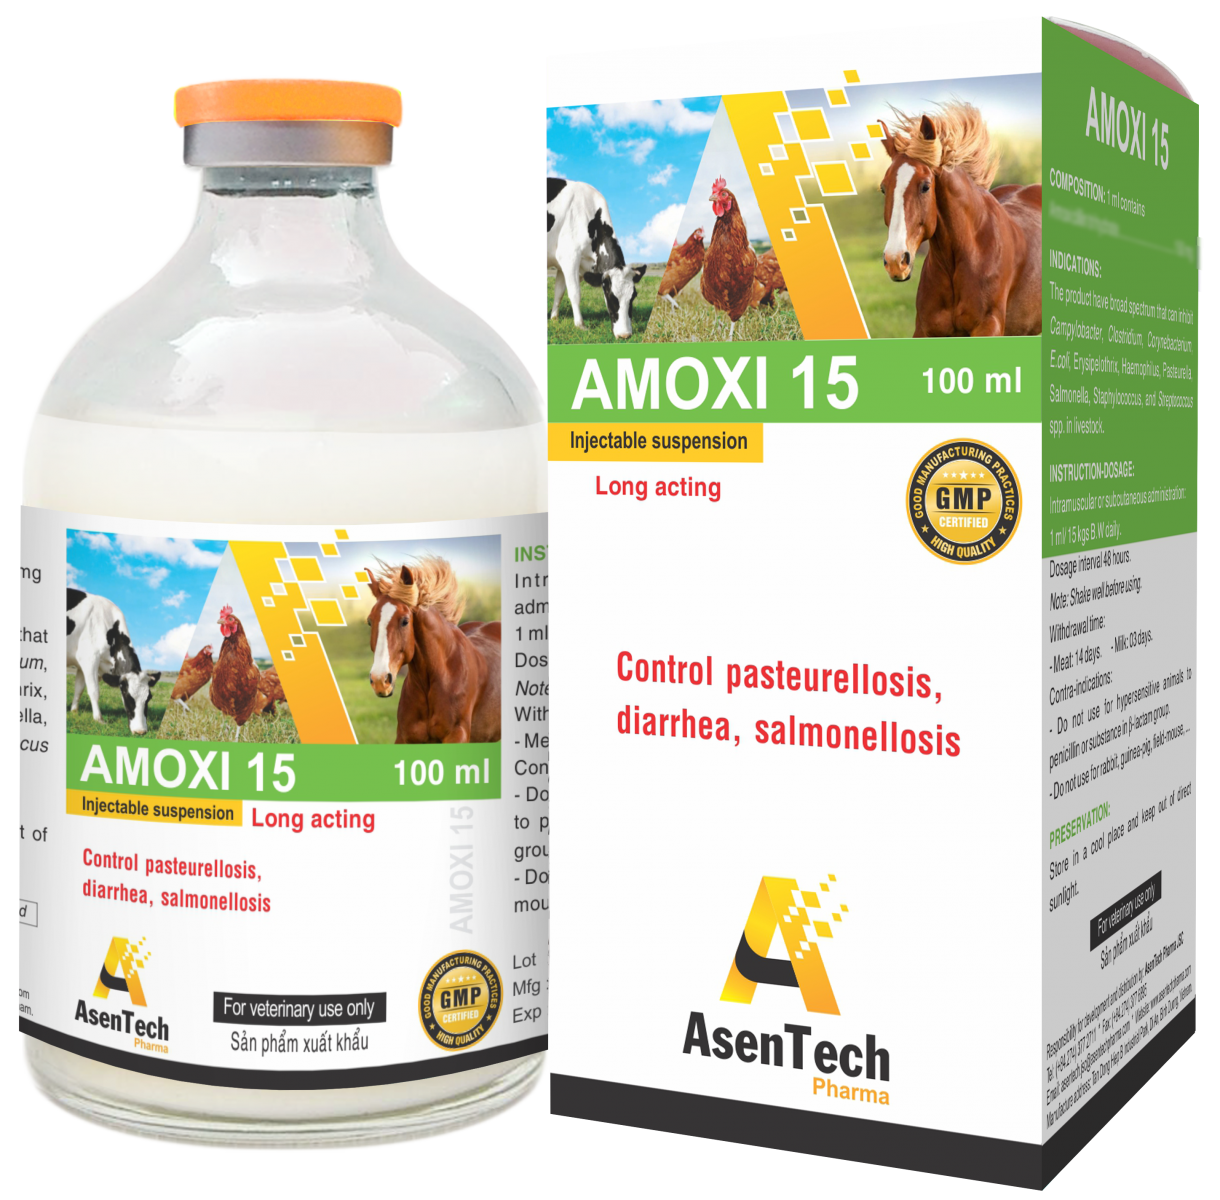 AMOXI 15